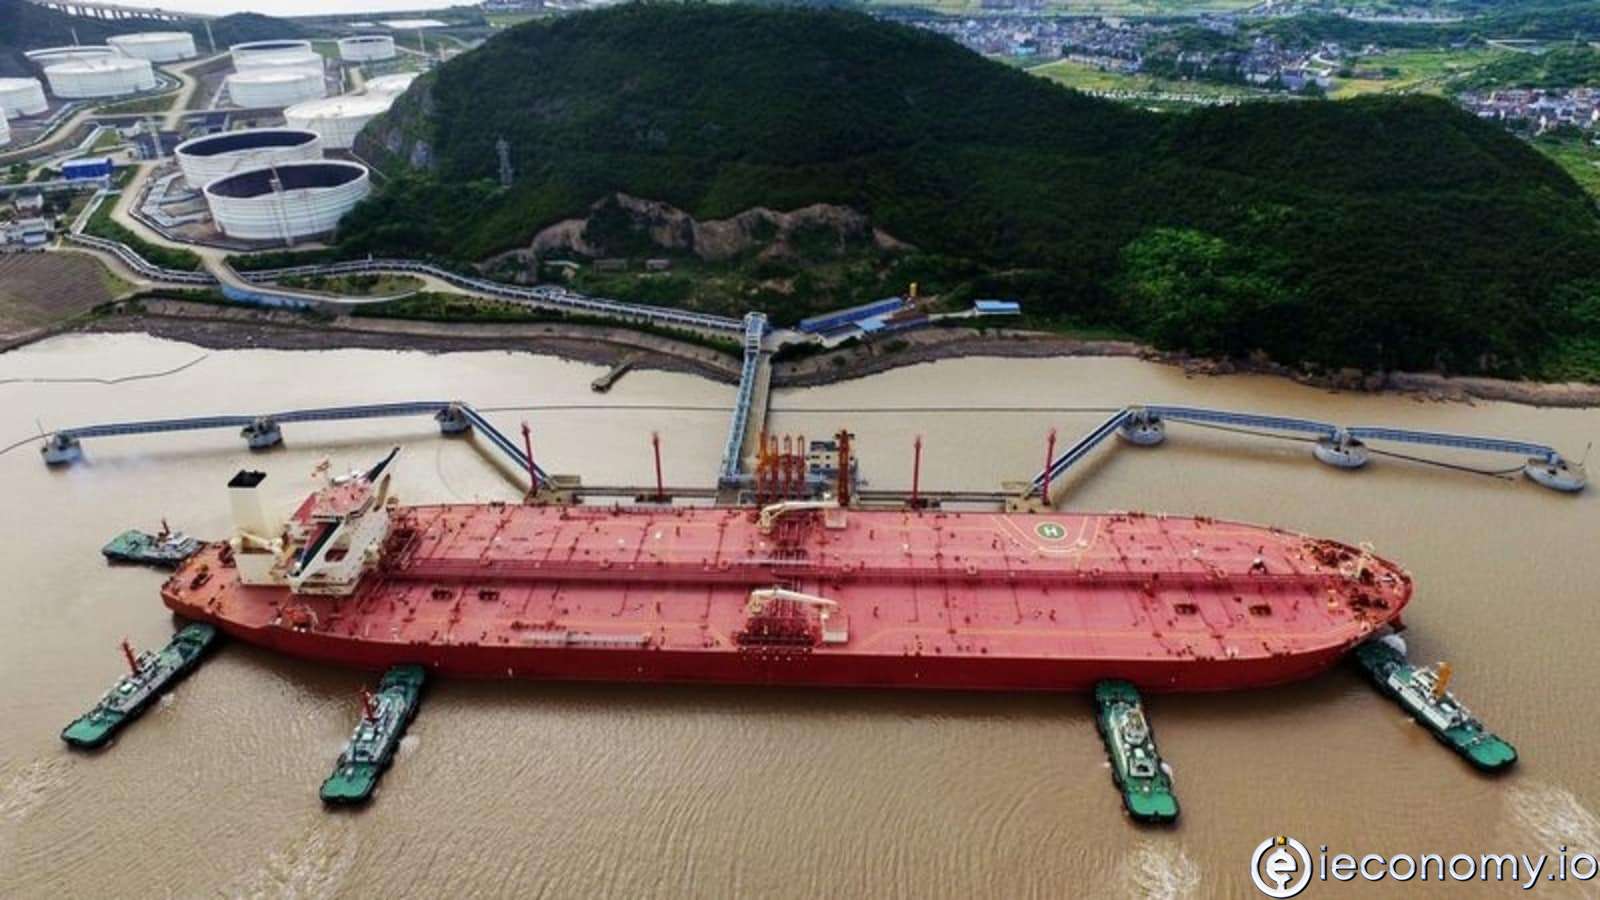 Çin, perşembe günü enfekte olan bir kişi nedeniyle liman kapattı